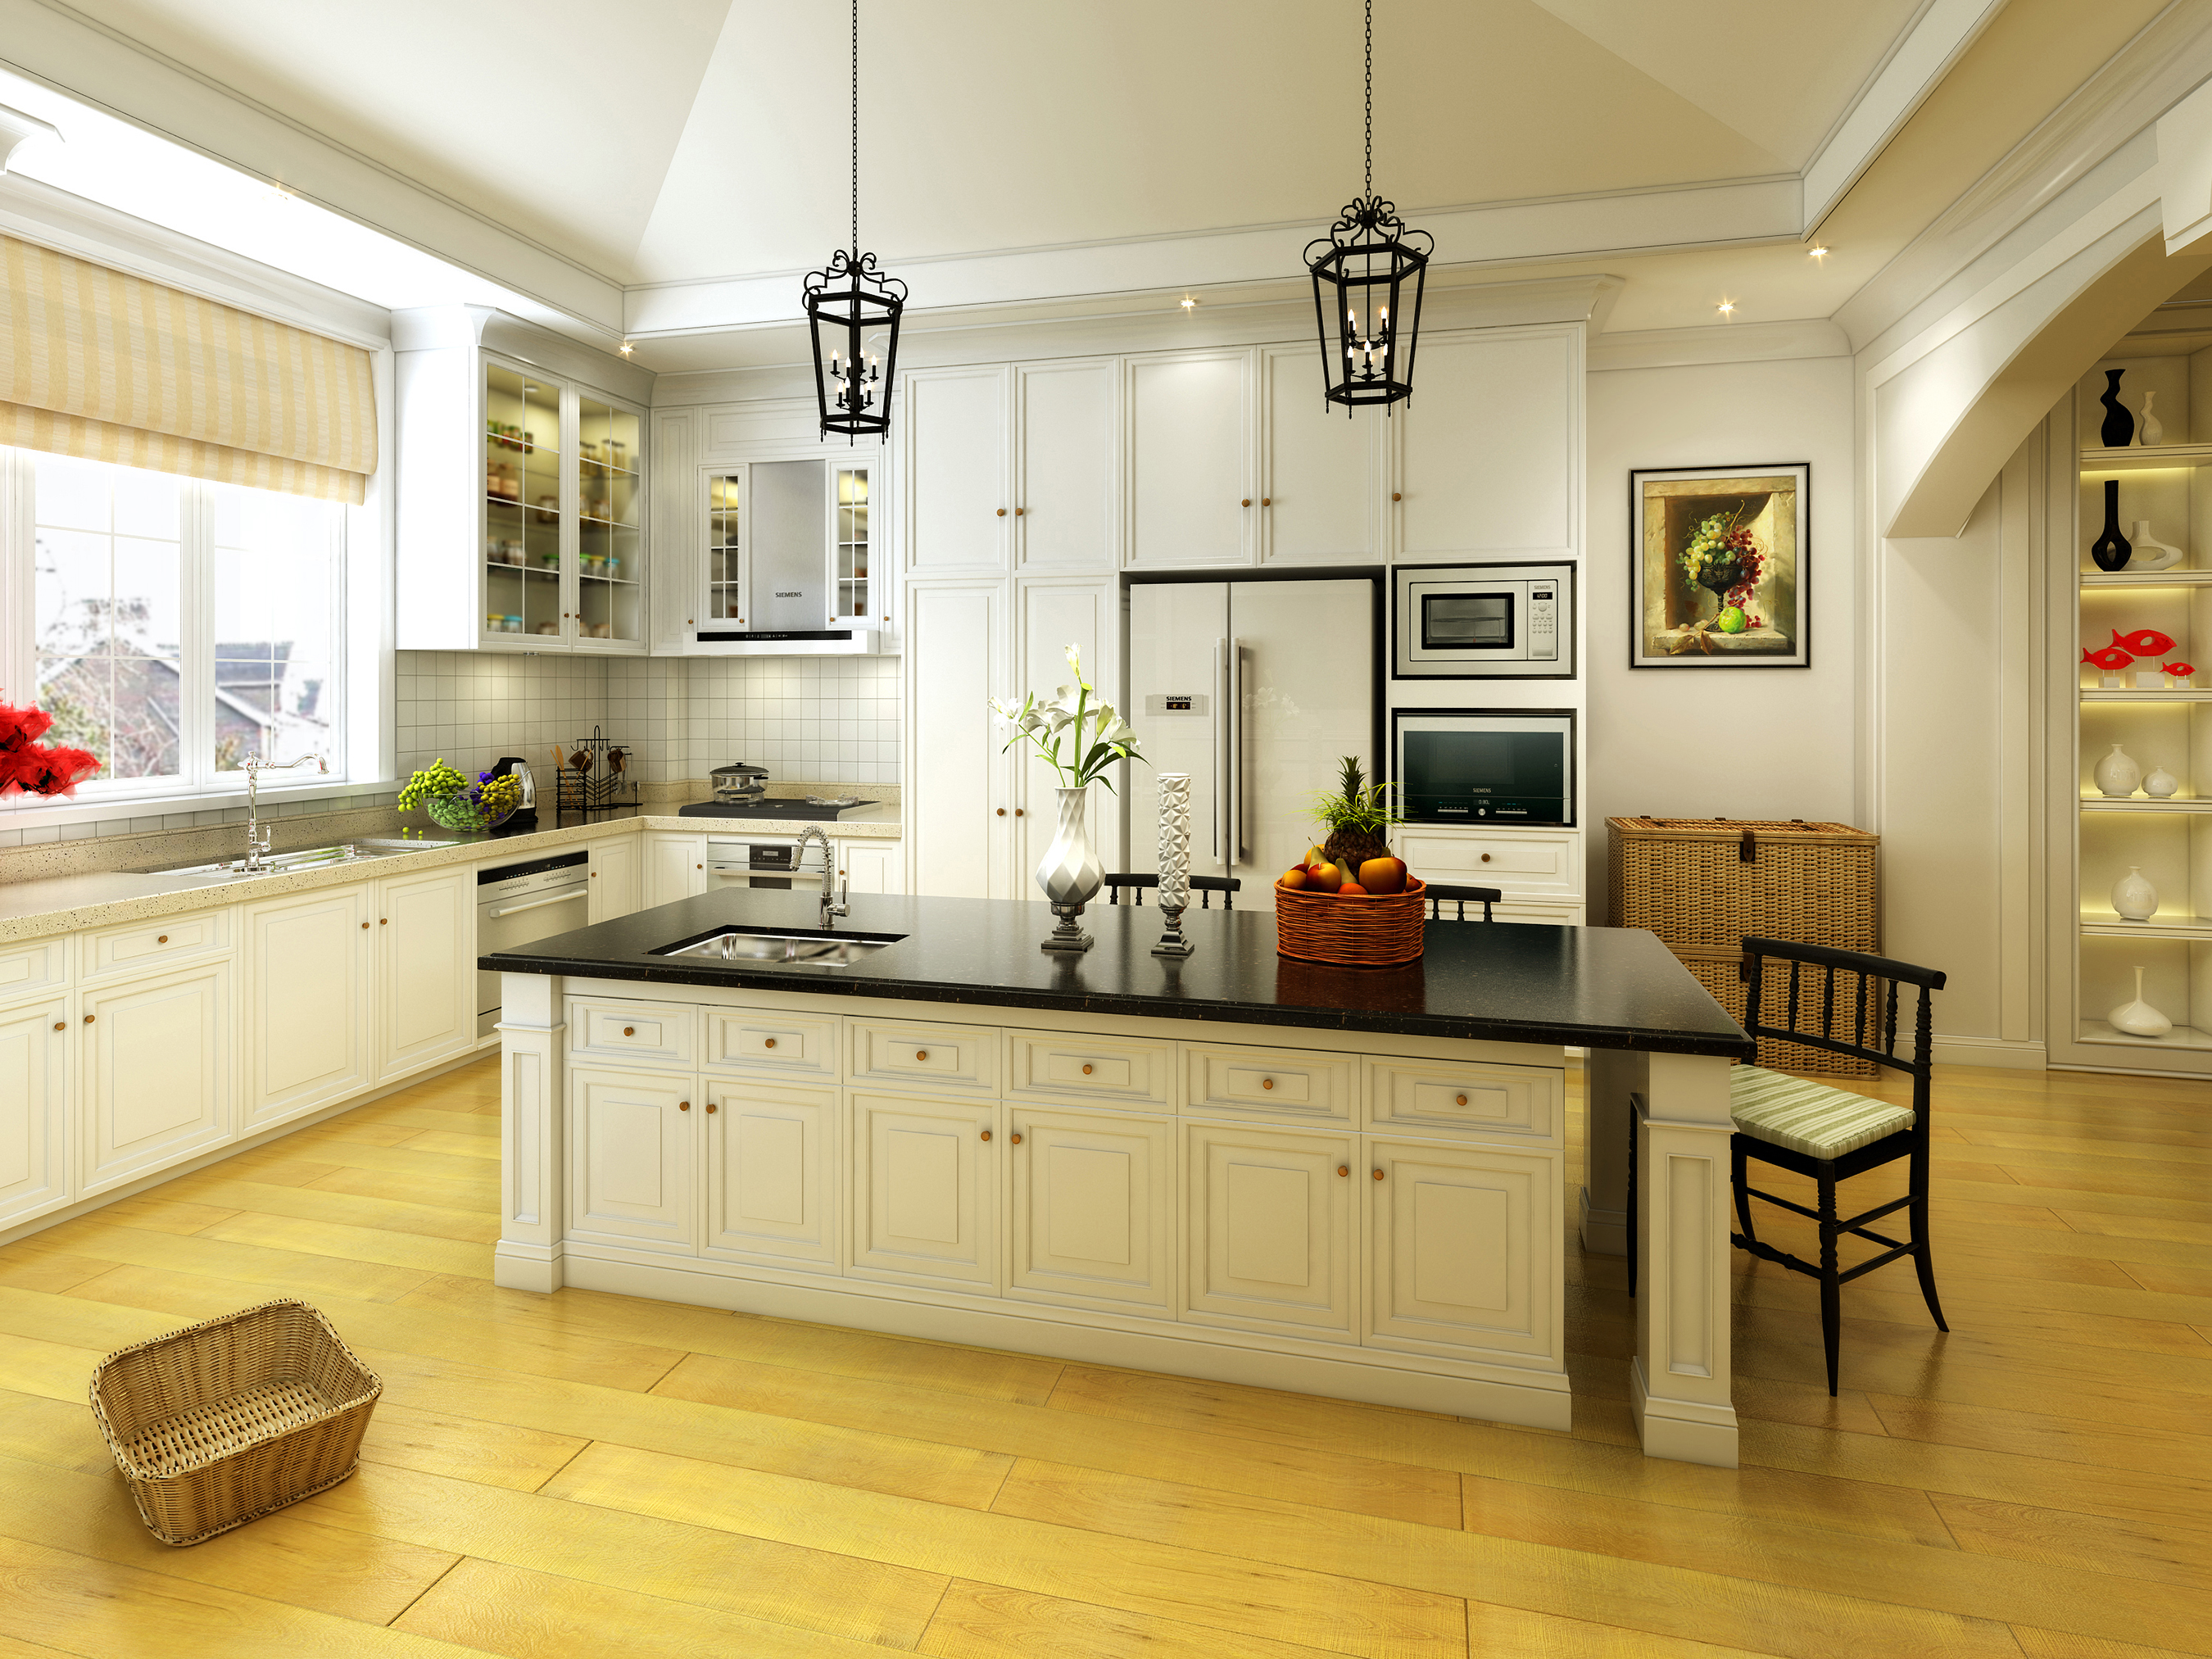 欧式 混搭 别墅 装修设计 厨房图片来自设计师-崔志广在君临南山 别墅的分享